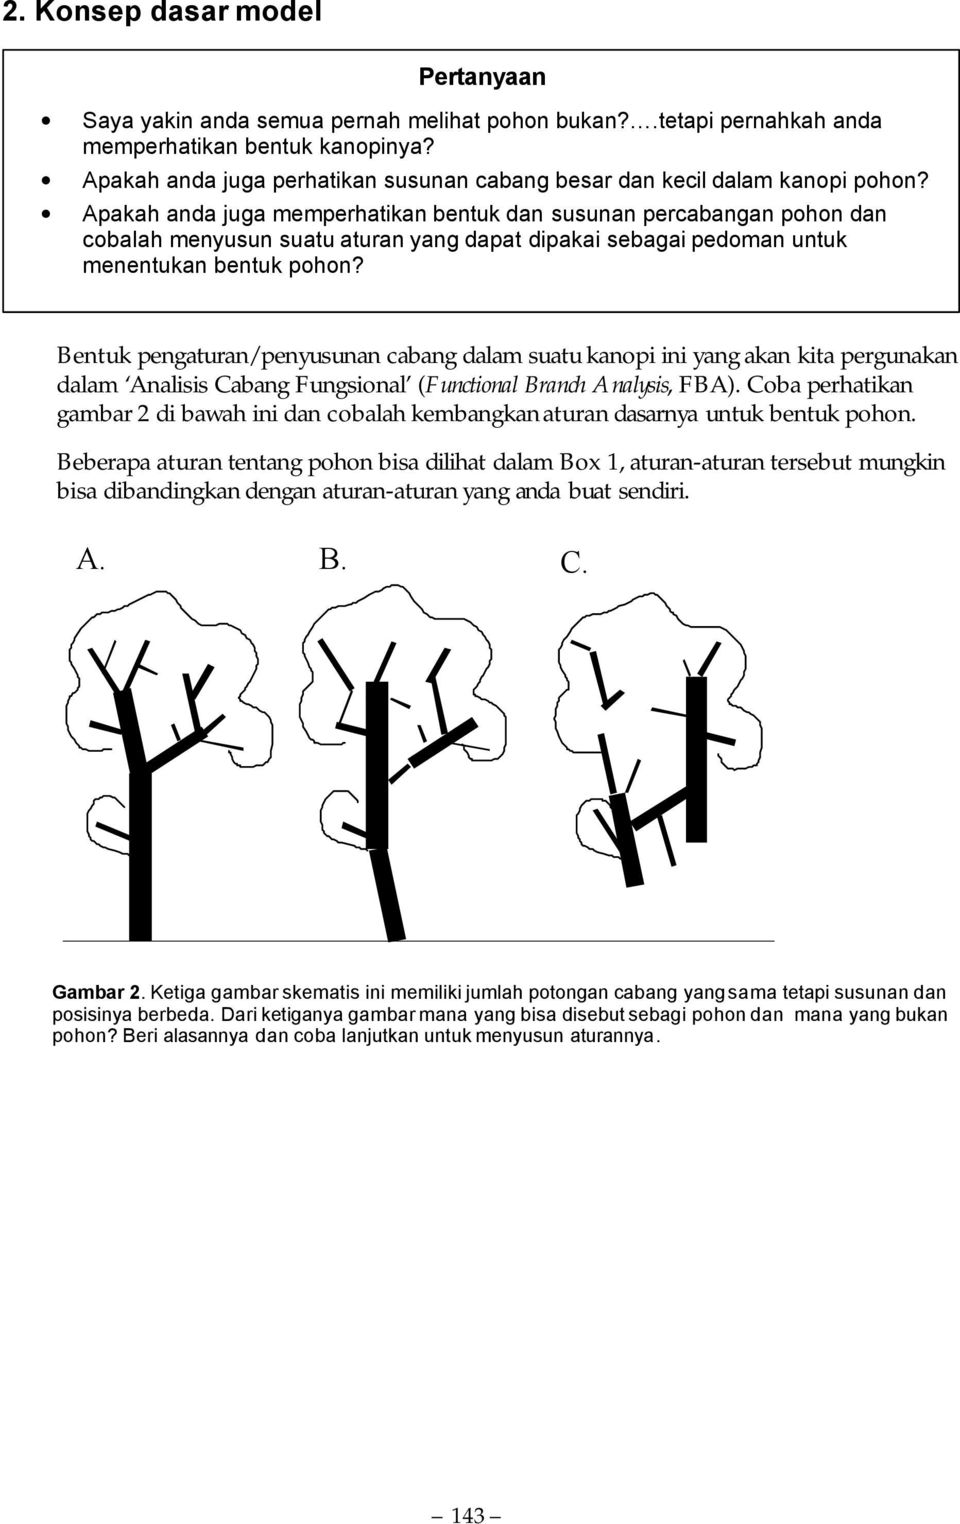 Apakah anda juga memperhatikan bentuk dan susunan percabangan pohon dan cobalah menyusun suatu aturan yang dapat dipakai sebagai pedoman untuk menentukan bentuk pohon?